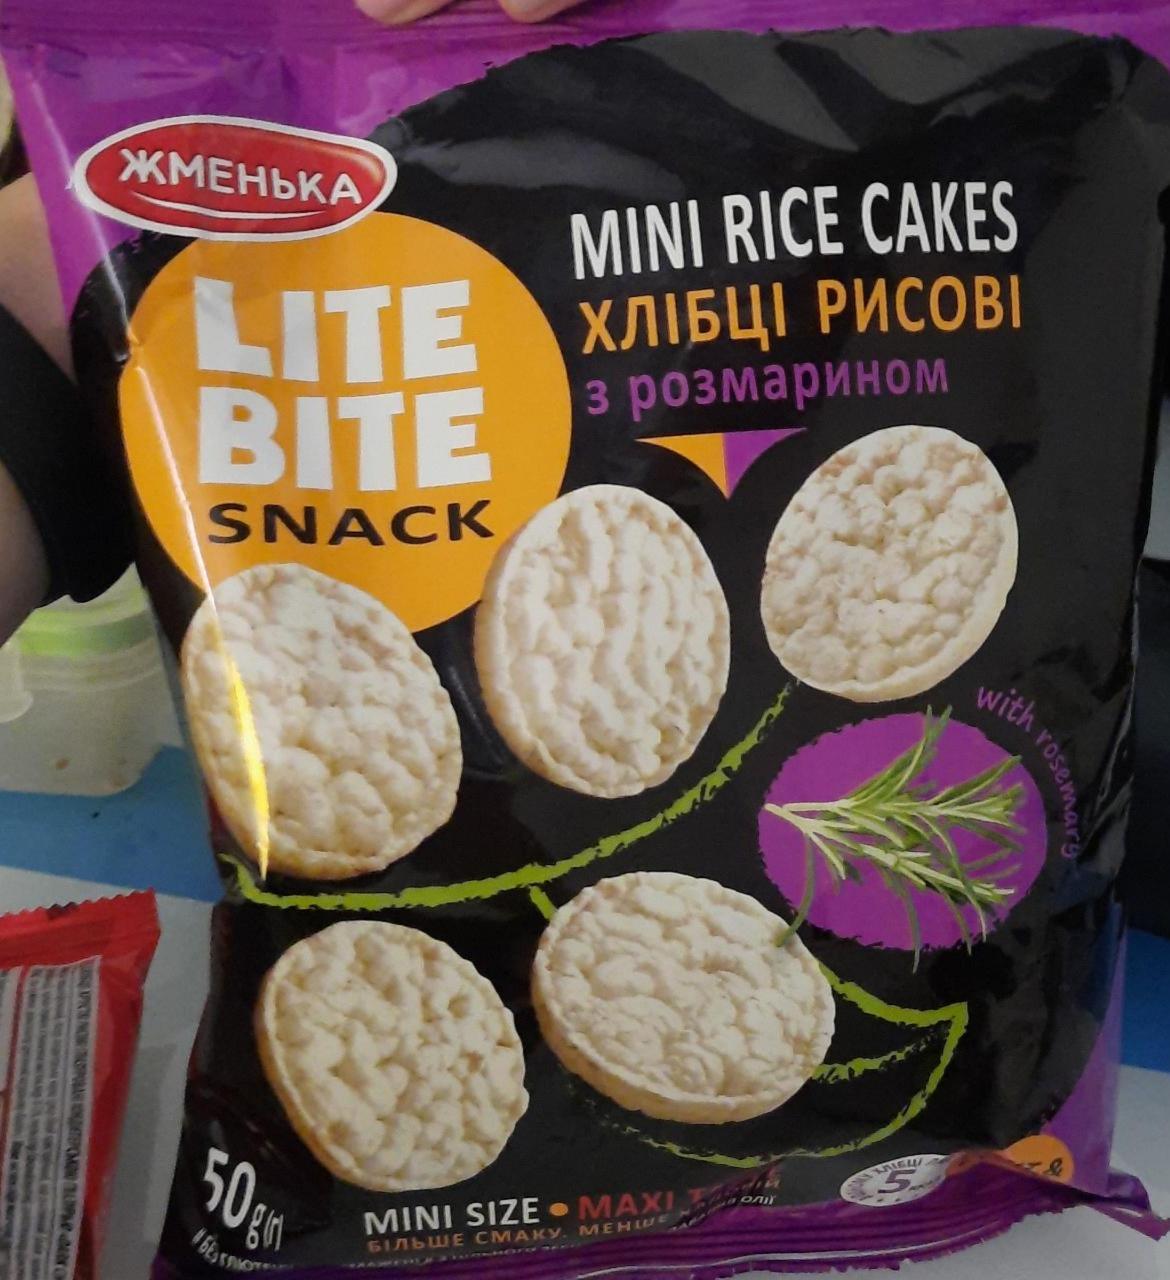 Фото - Хлебцы Lite Bite Snack рисовые с розмарином Жменька